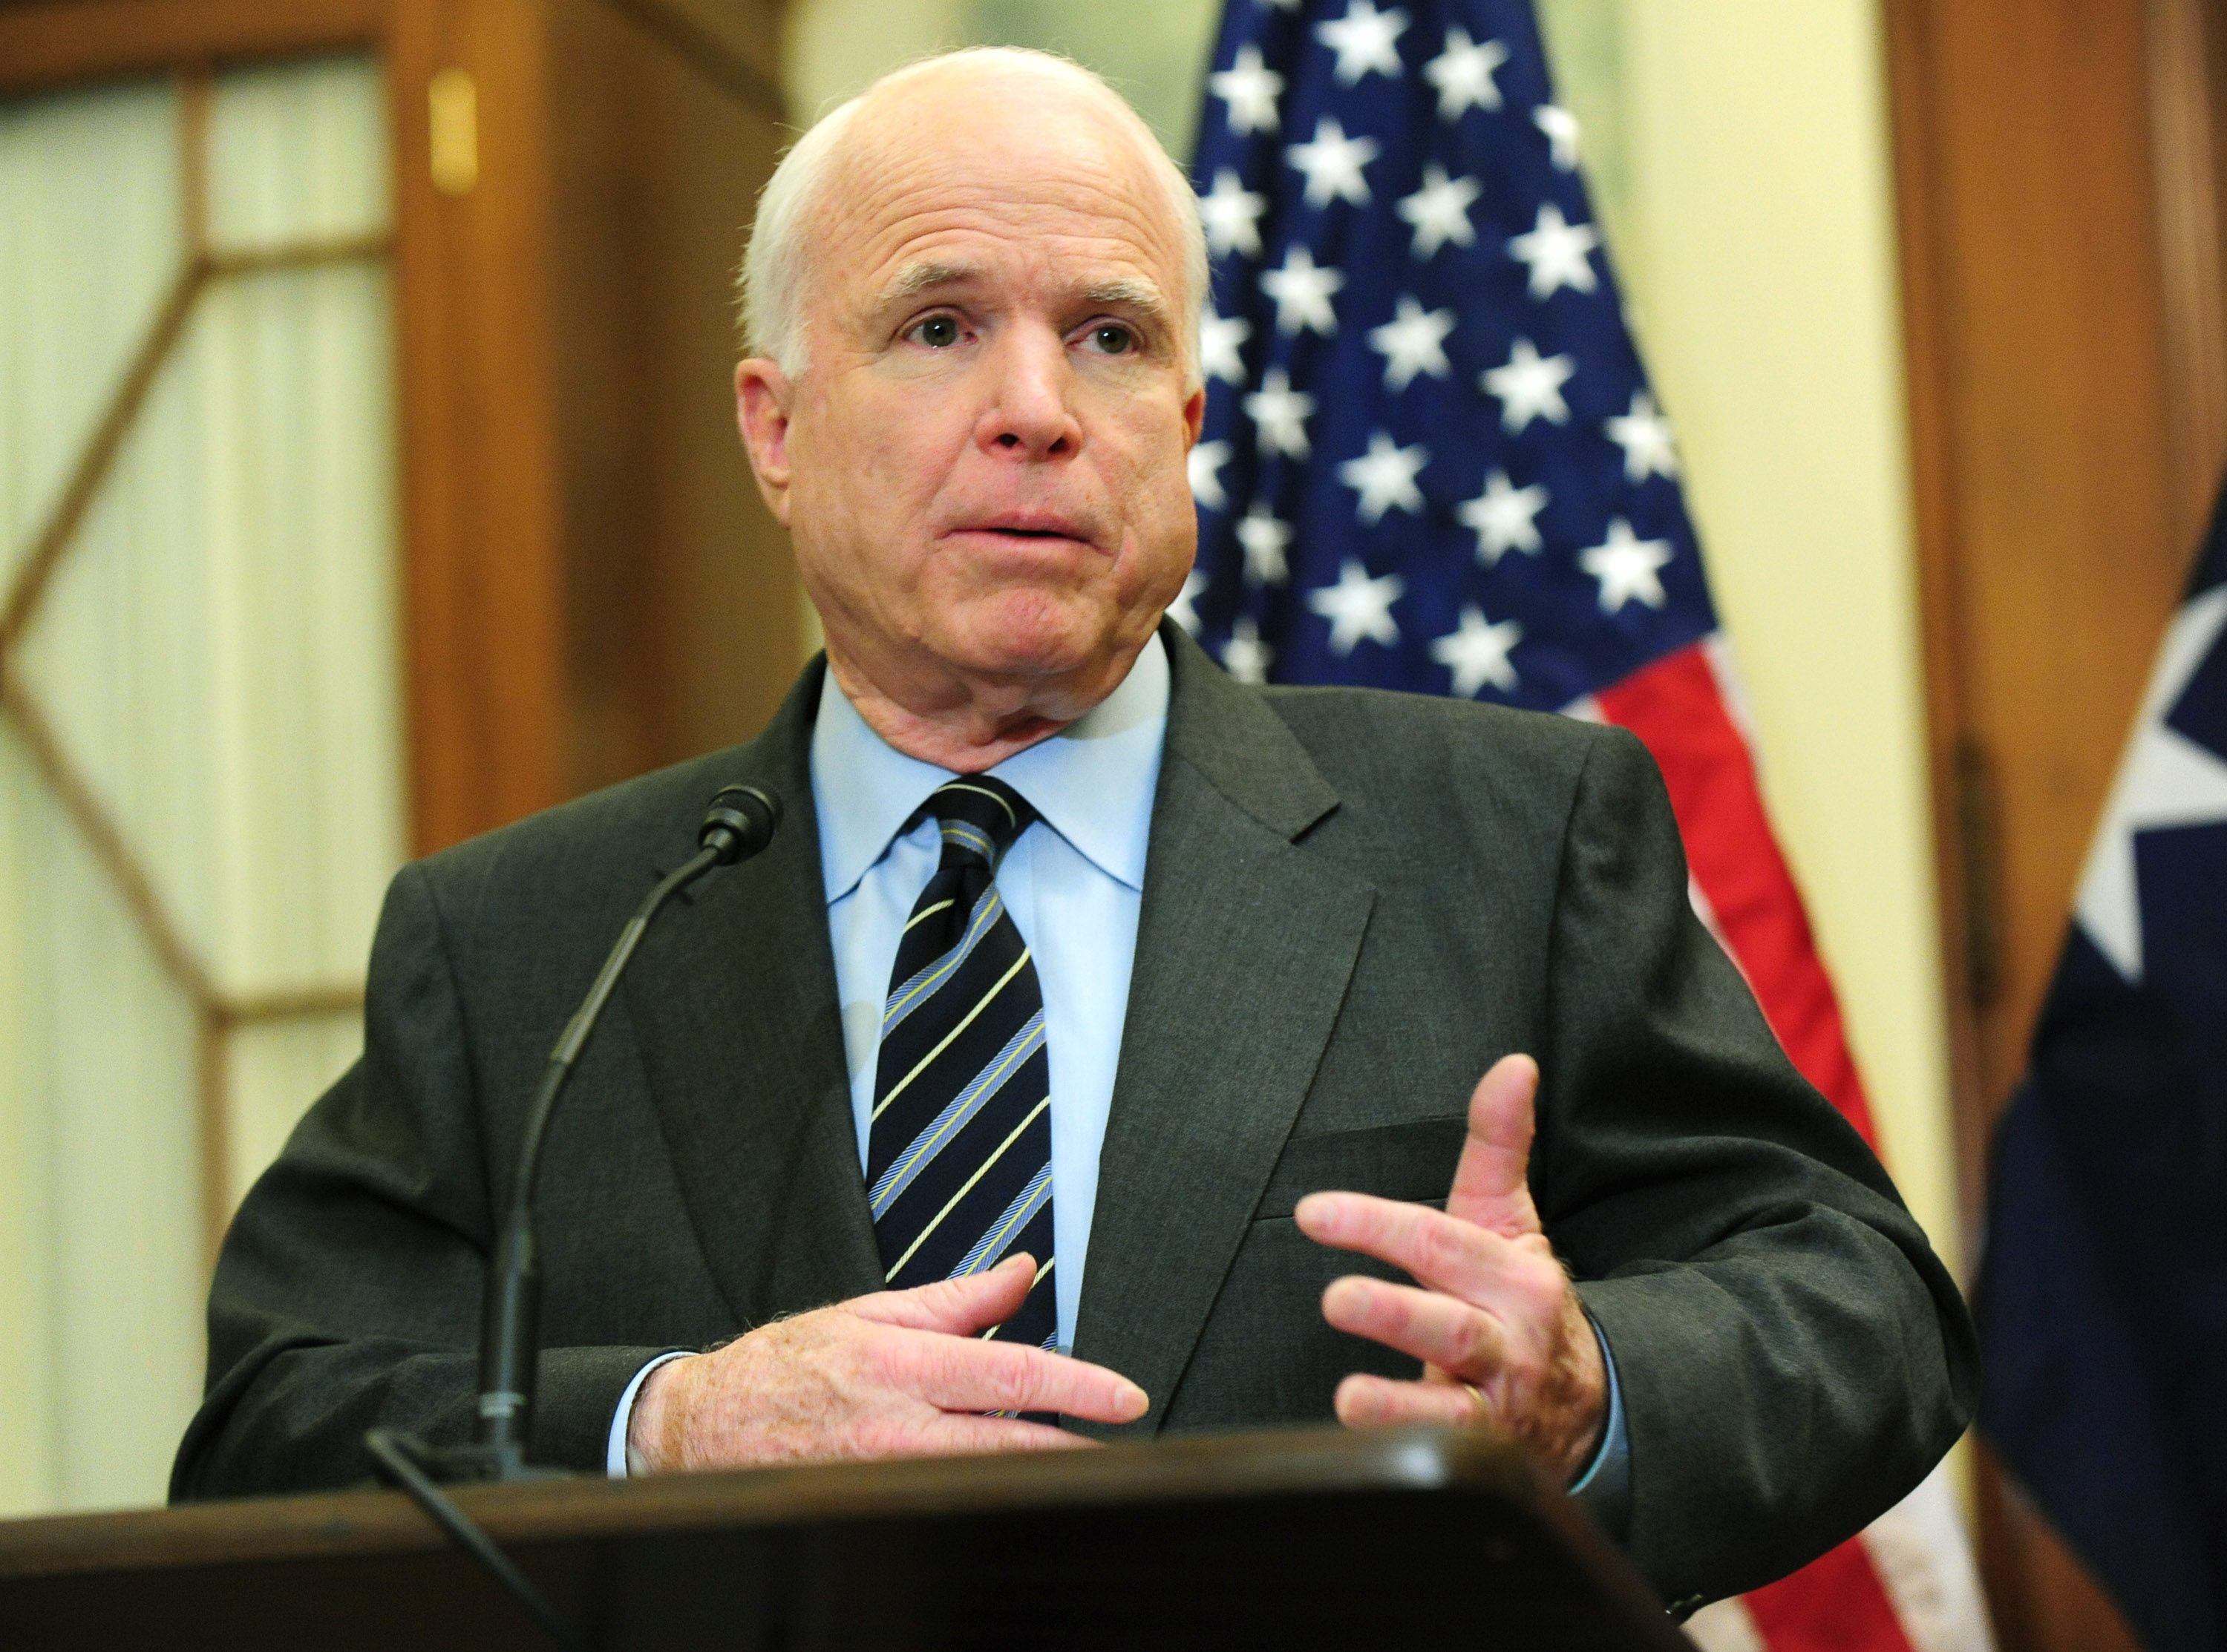 McCain-kijelentés - A kormányszóvivő újra elítélte a szenátor szavait